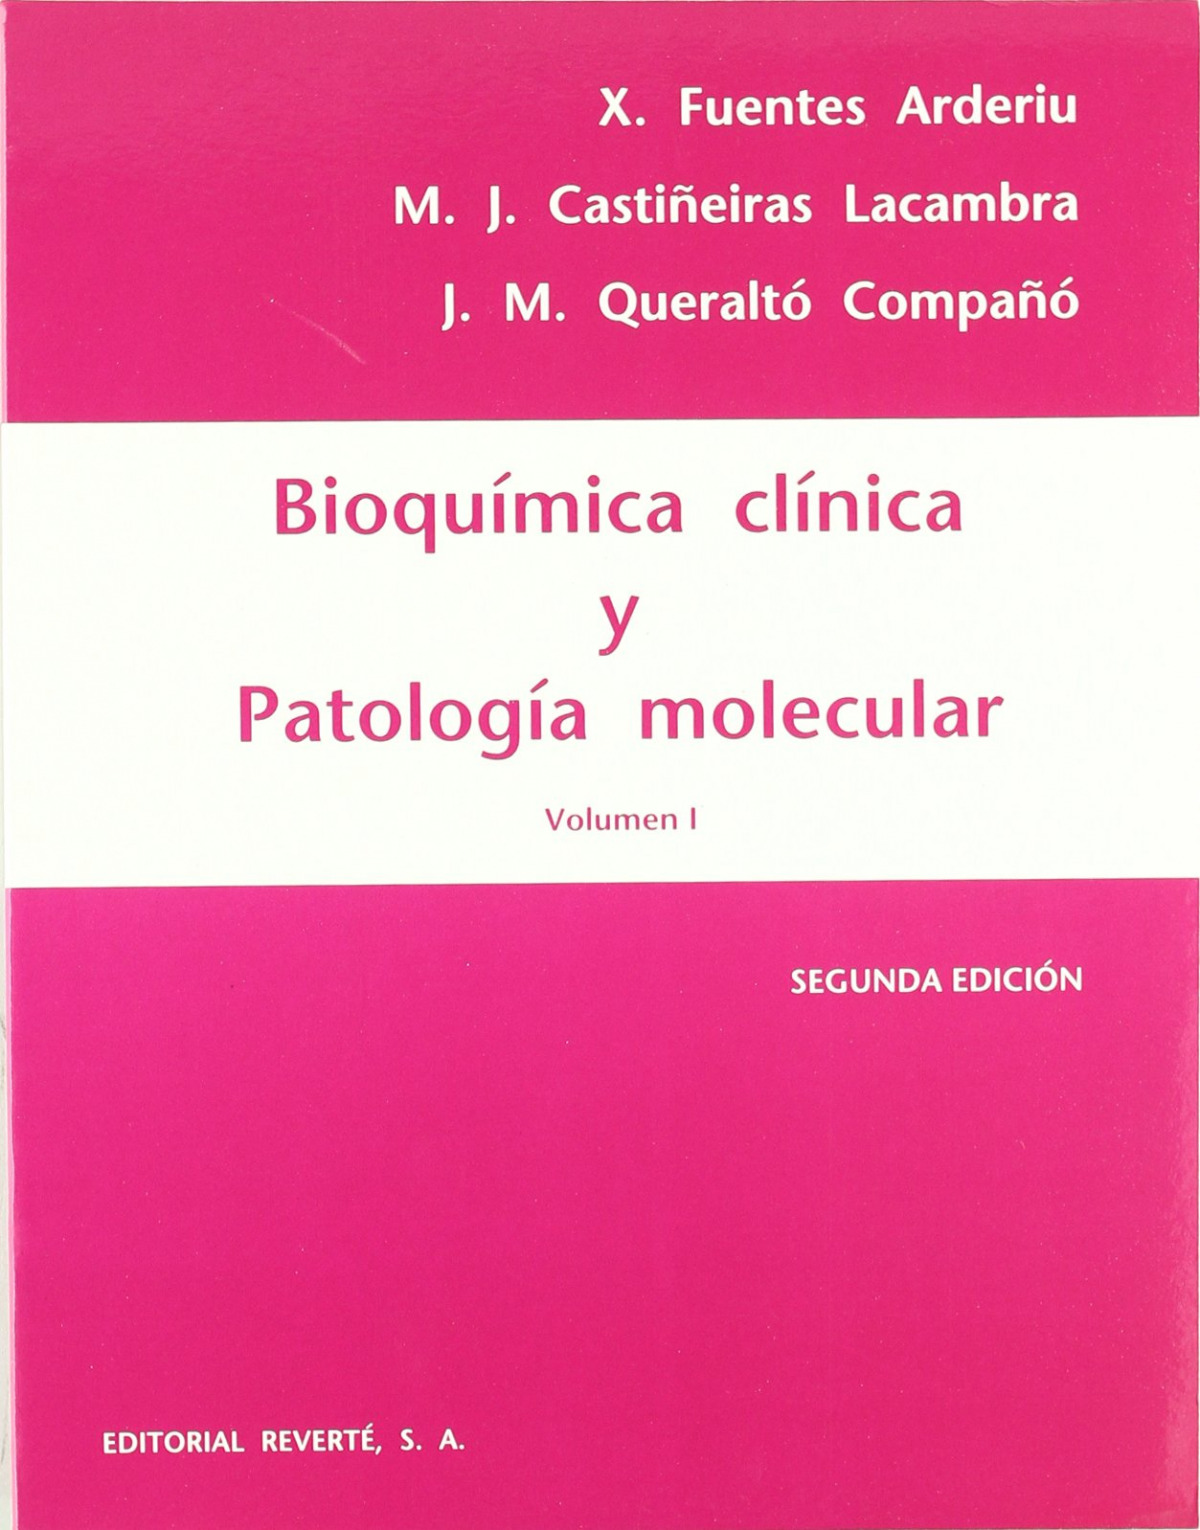 Bioquímica clínica y patología molecular. Volumen 1 - Fuentes Arderiu, X.